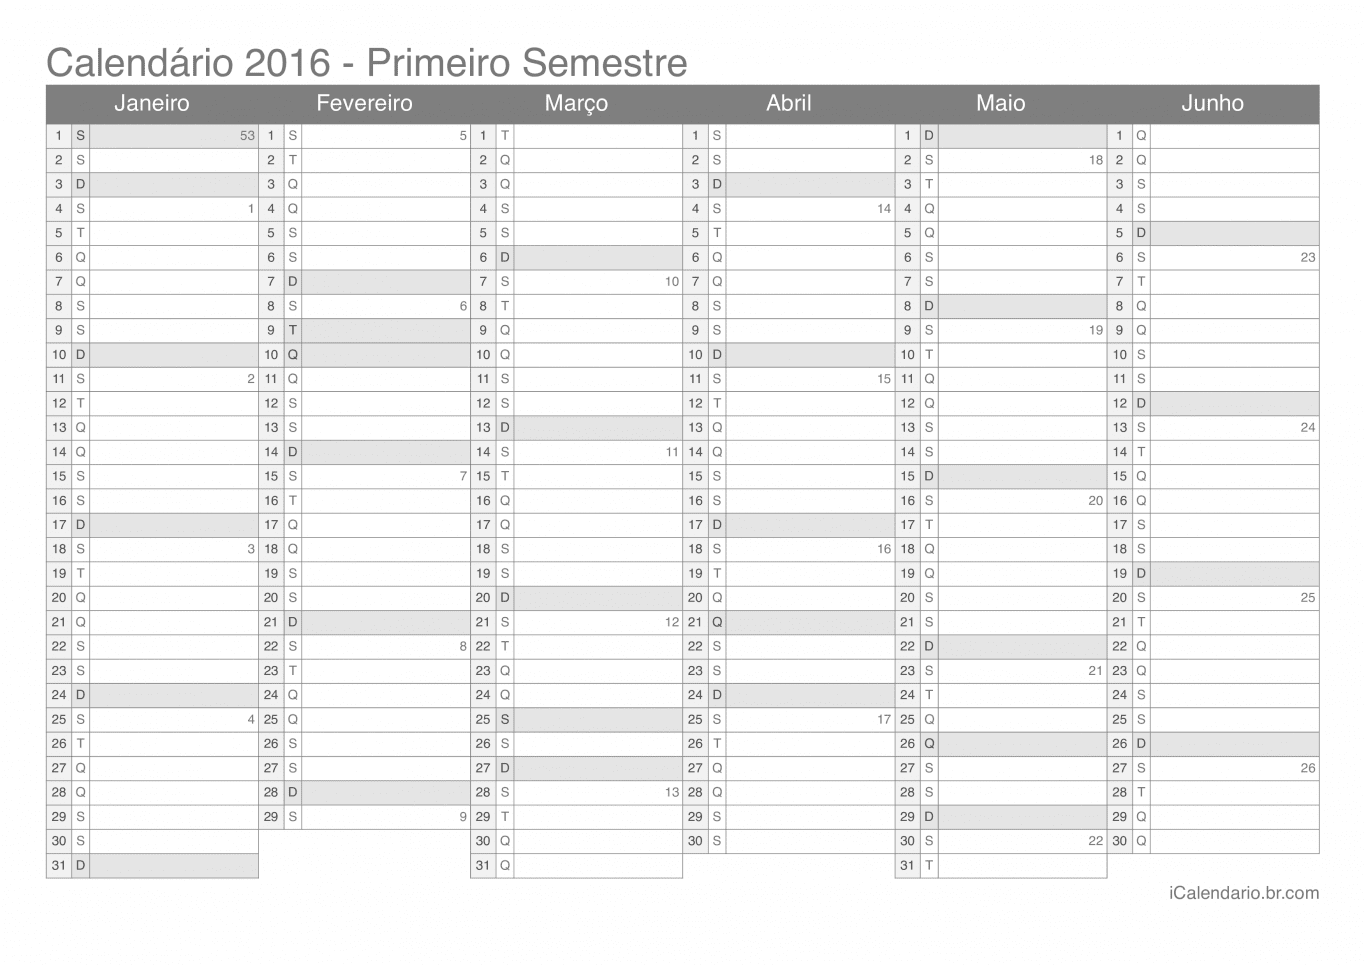 Calendário por semestre com números da semana 2016